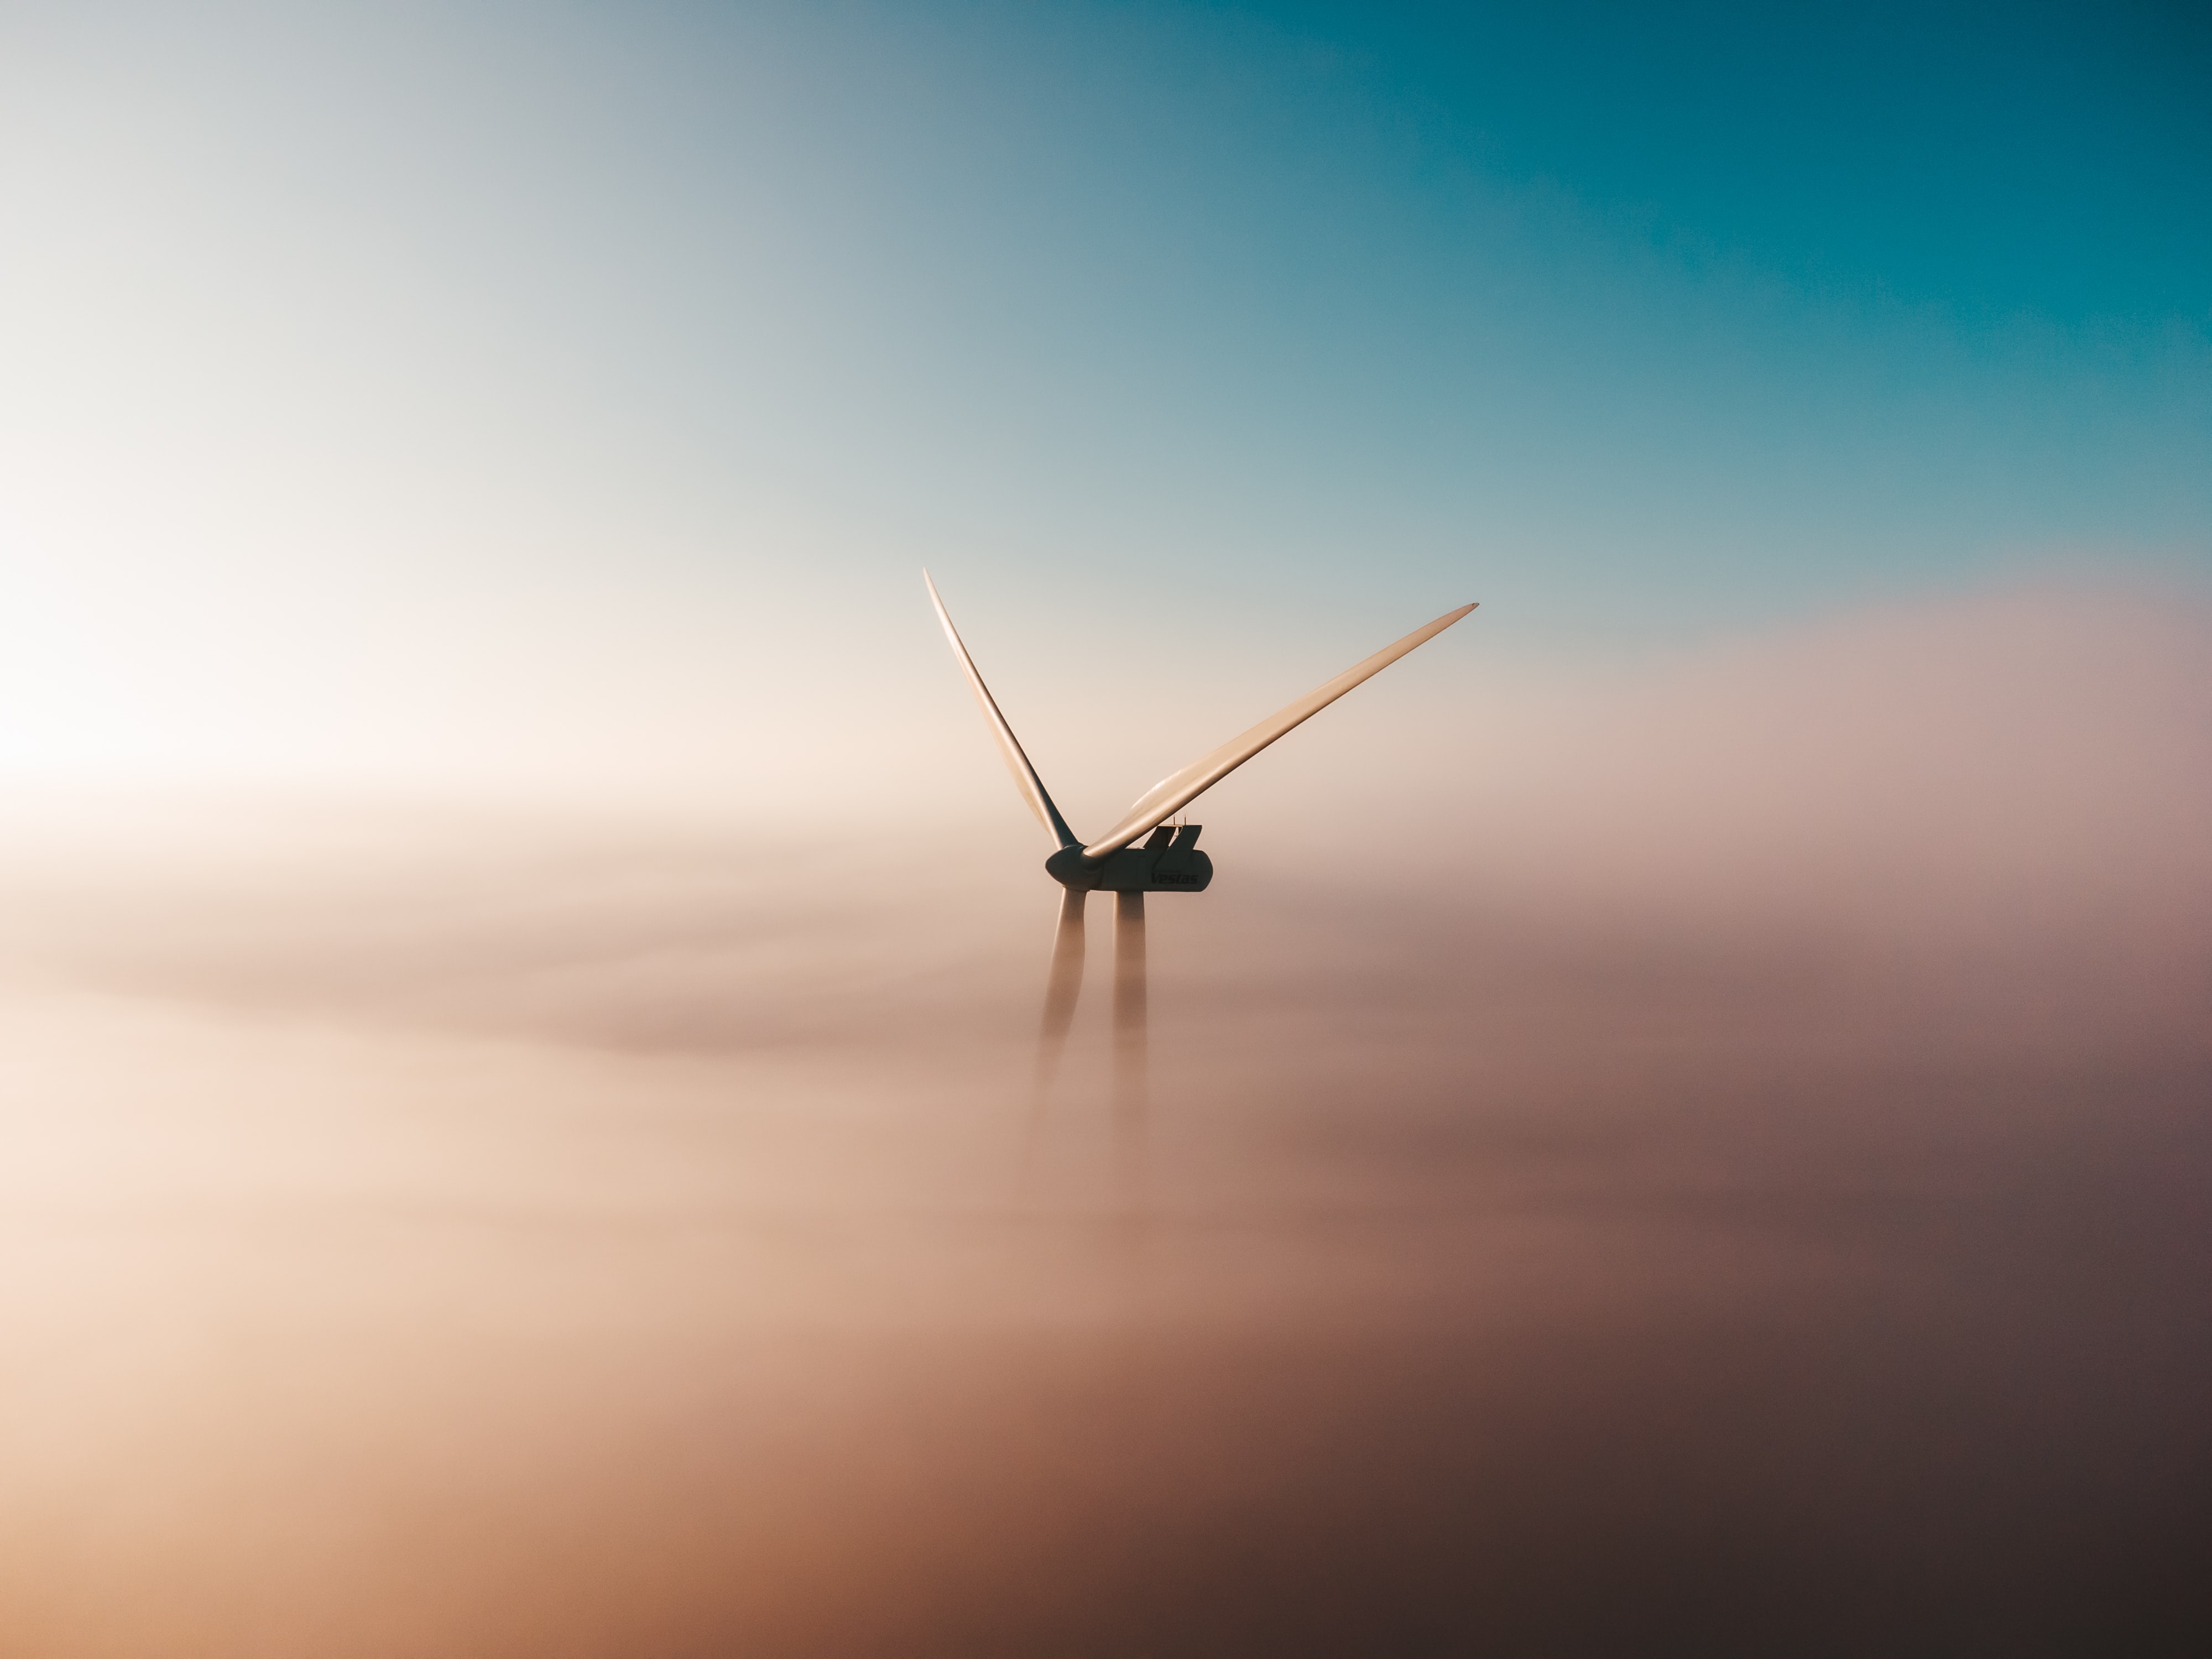 Titelbild "Klimaziele und Energiewende". Ein Windrad im Nebel. Quelle: unsplash.com/@sanderweeteling